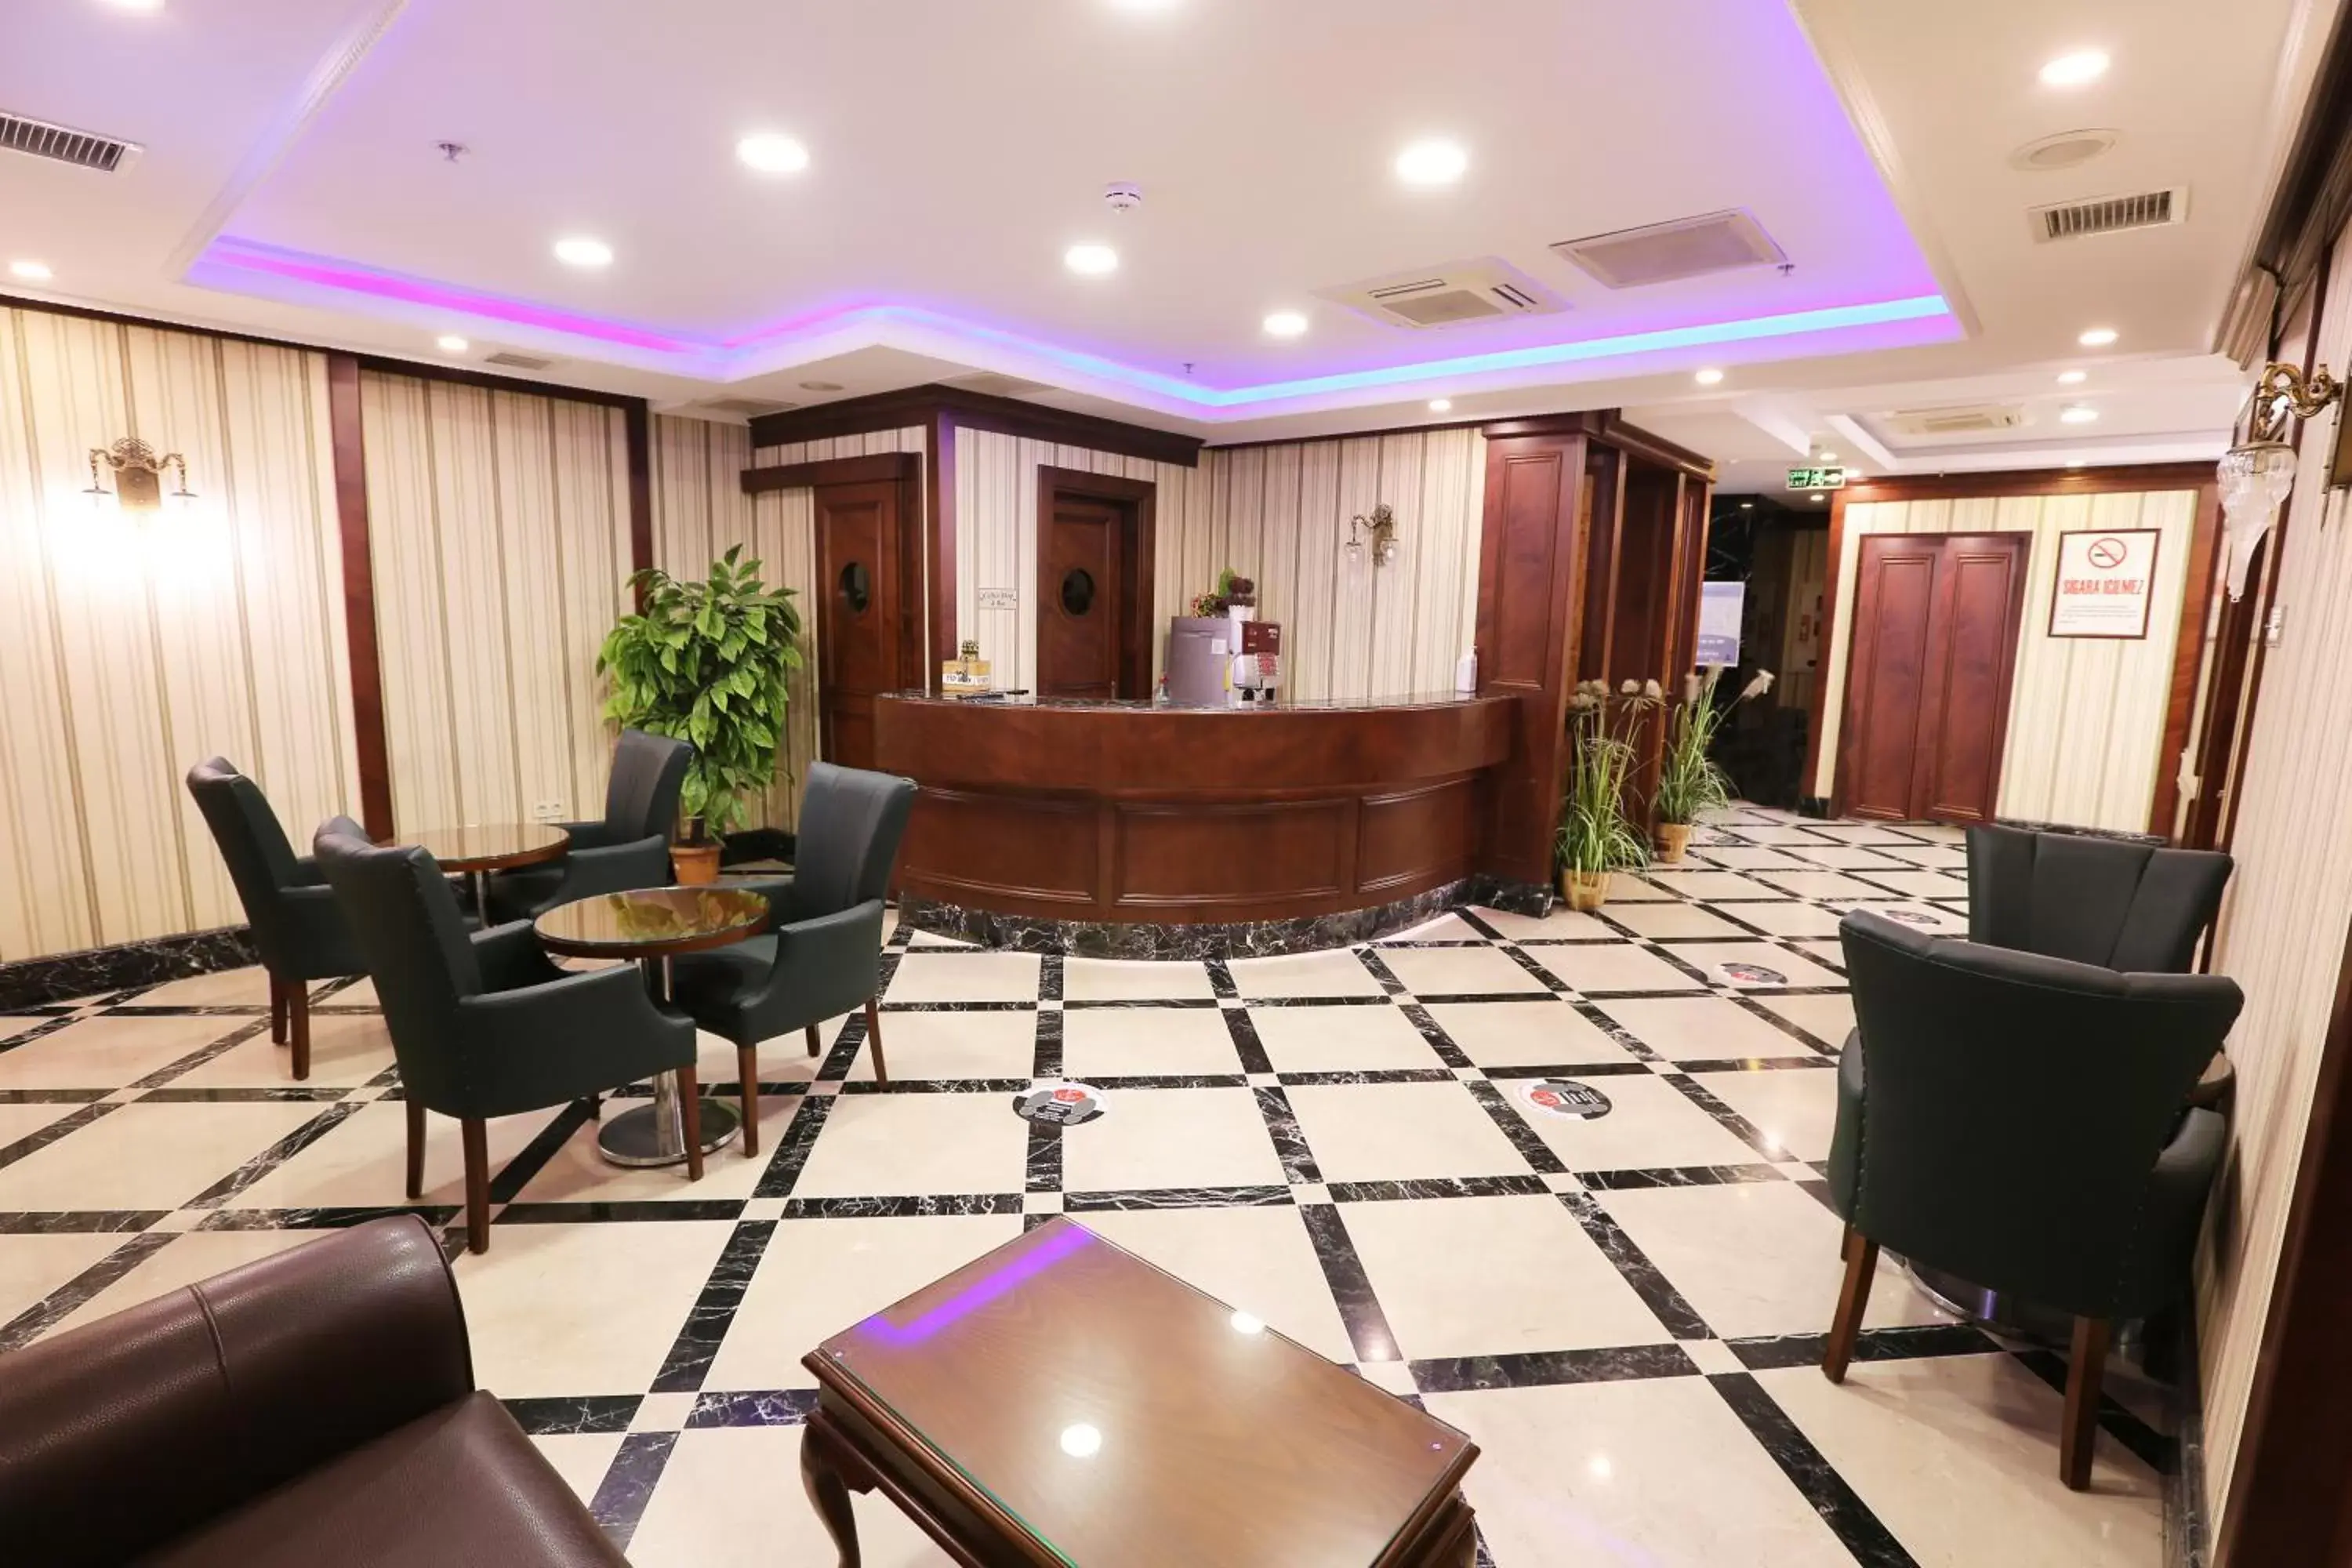 Lobby or reception, Lobby/Reception in Alpinn Hotel Istanbul